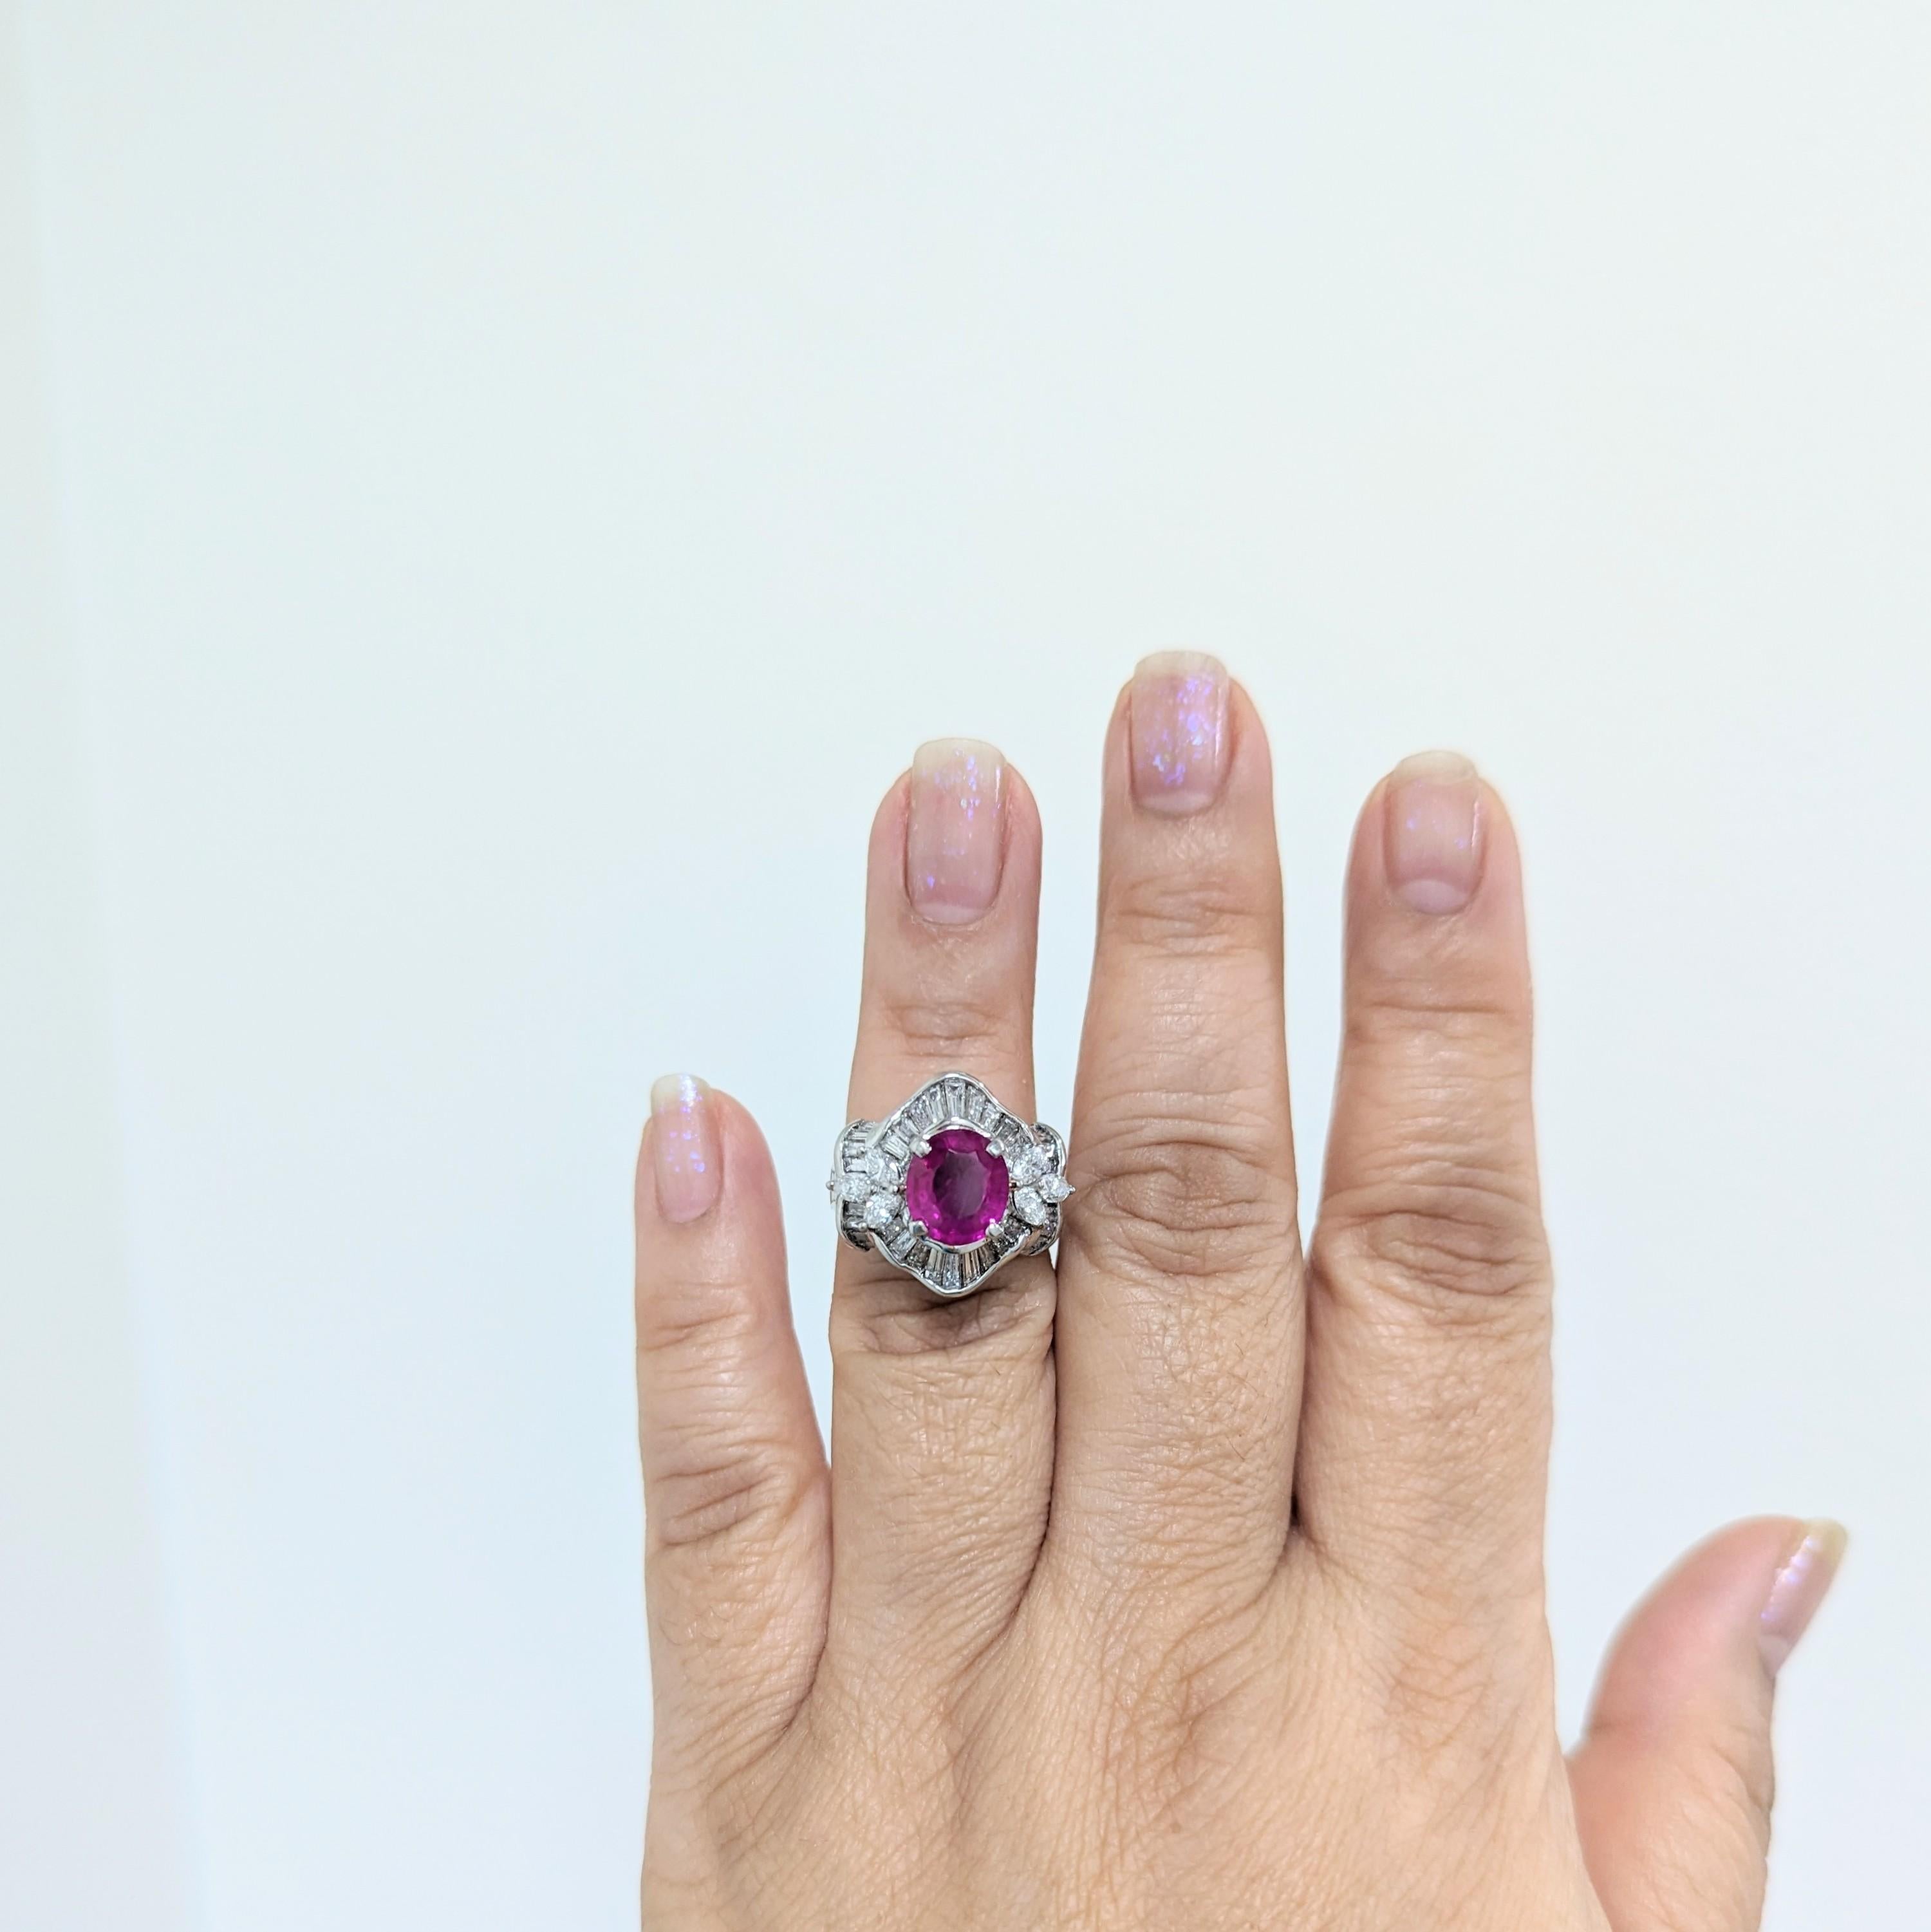 Schöne 2,78 ct. Ovaler purpurroter Rubin aus Birma mit GIA-Zertifikat und 2,62 ct. weiße Diamanten in Marquise- und Baguetteform von guter Qualität.  Handgefertigt in Platin.  Ringgröße 6,25.  Inklusive GIA-Zertifikat.